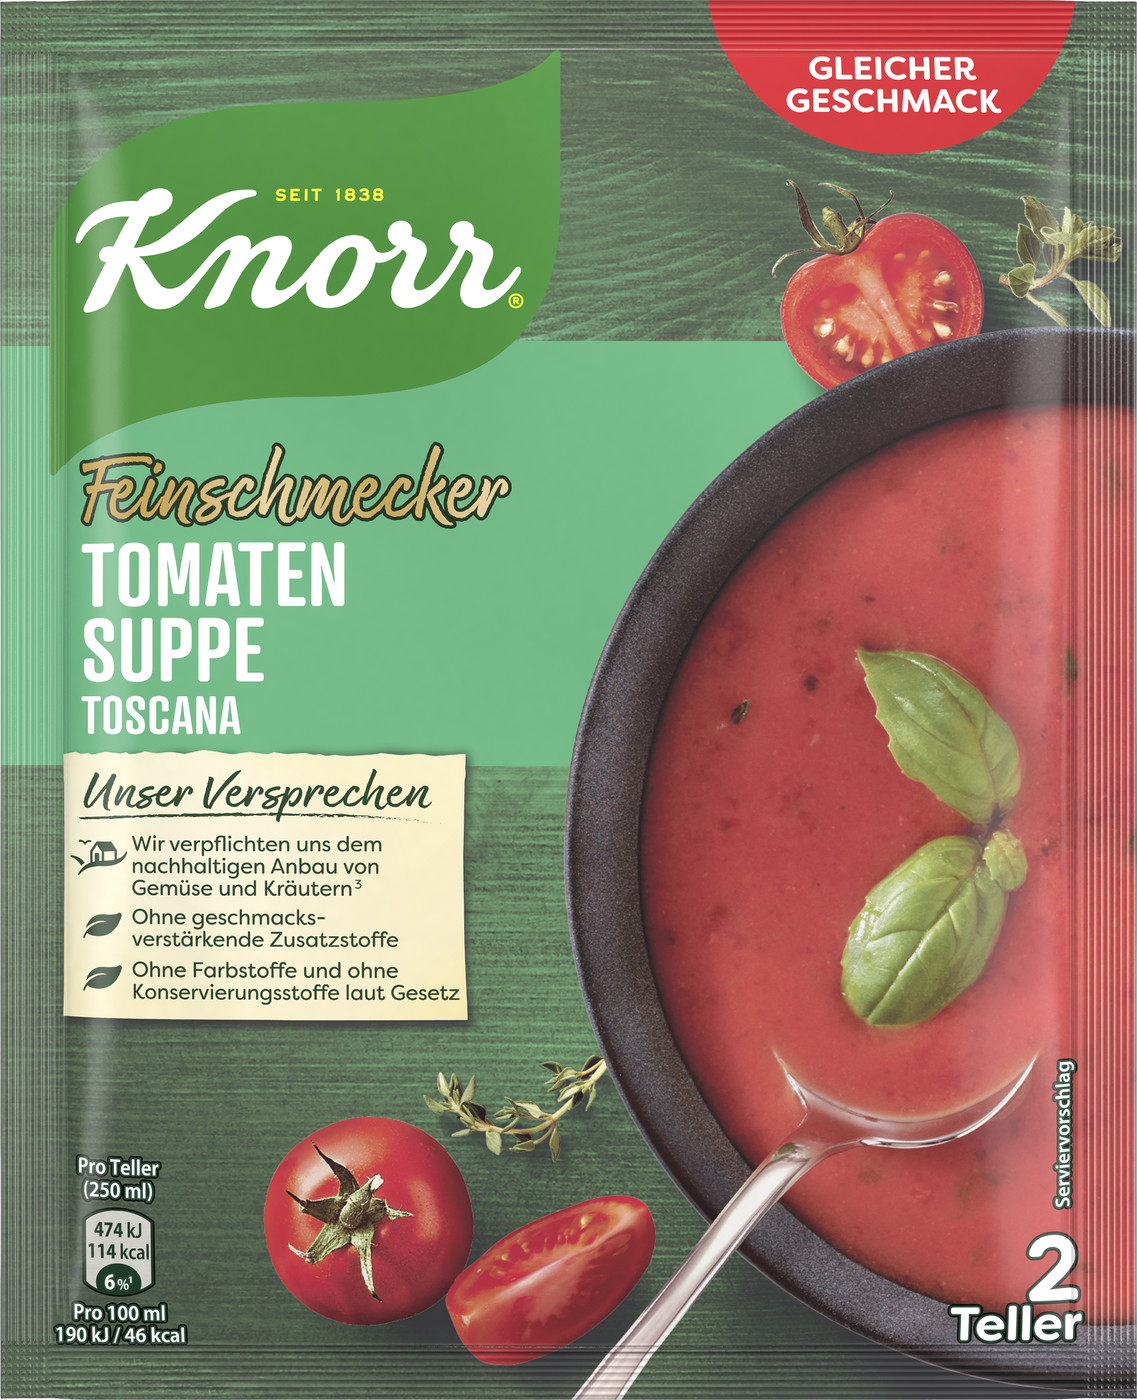 Knorr Feinschmecker Tomaten Suppe Toscana 59G